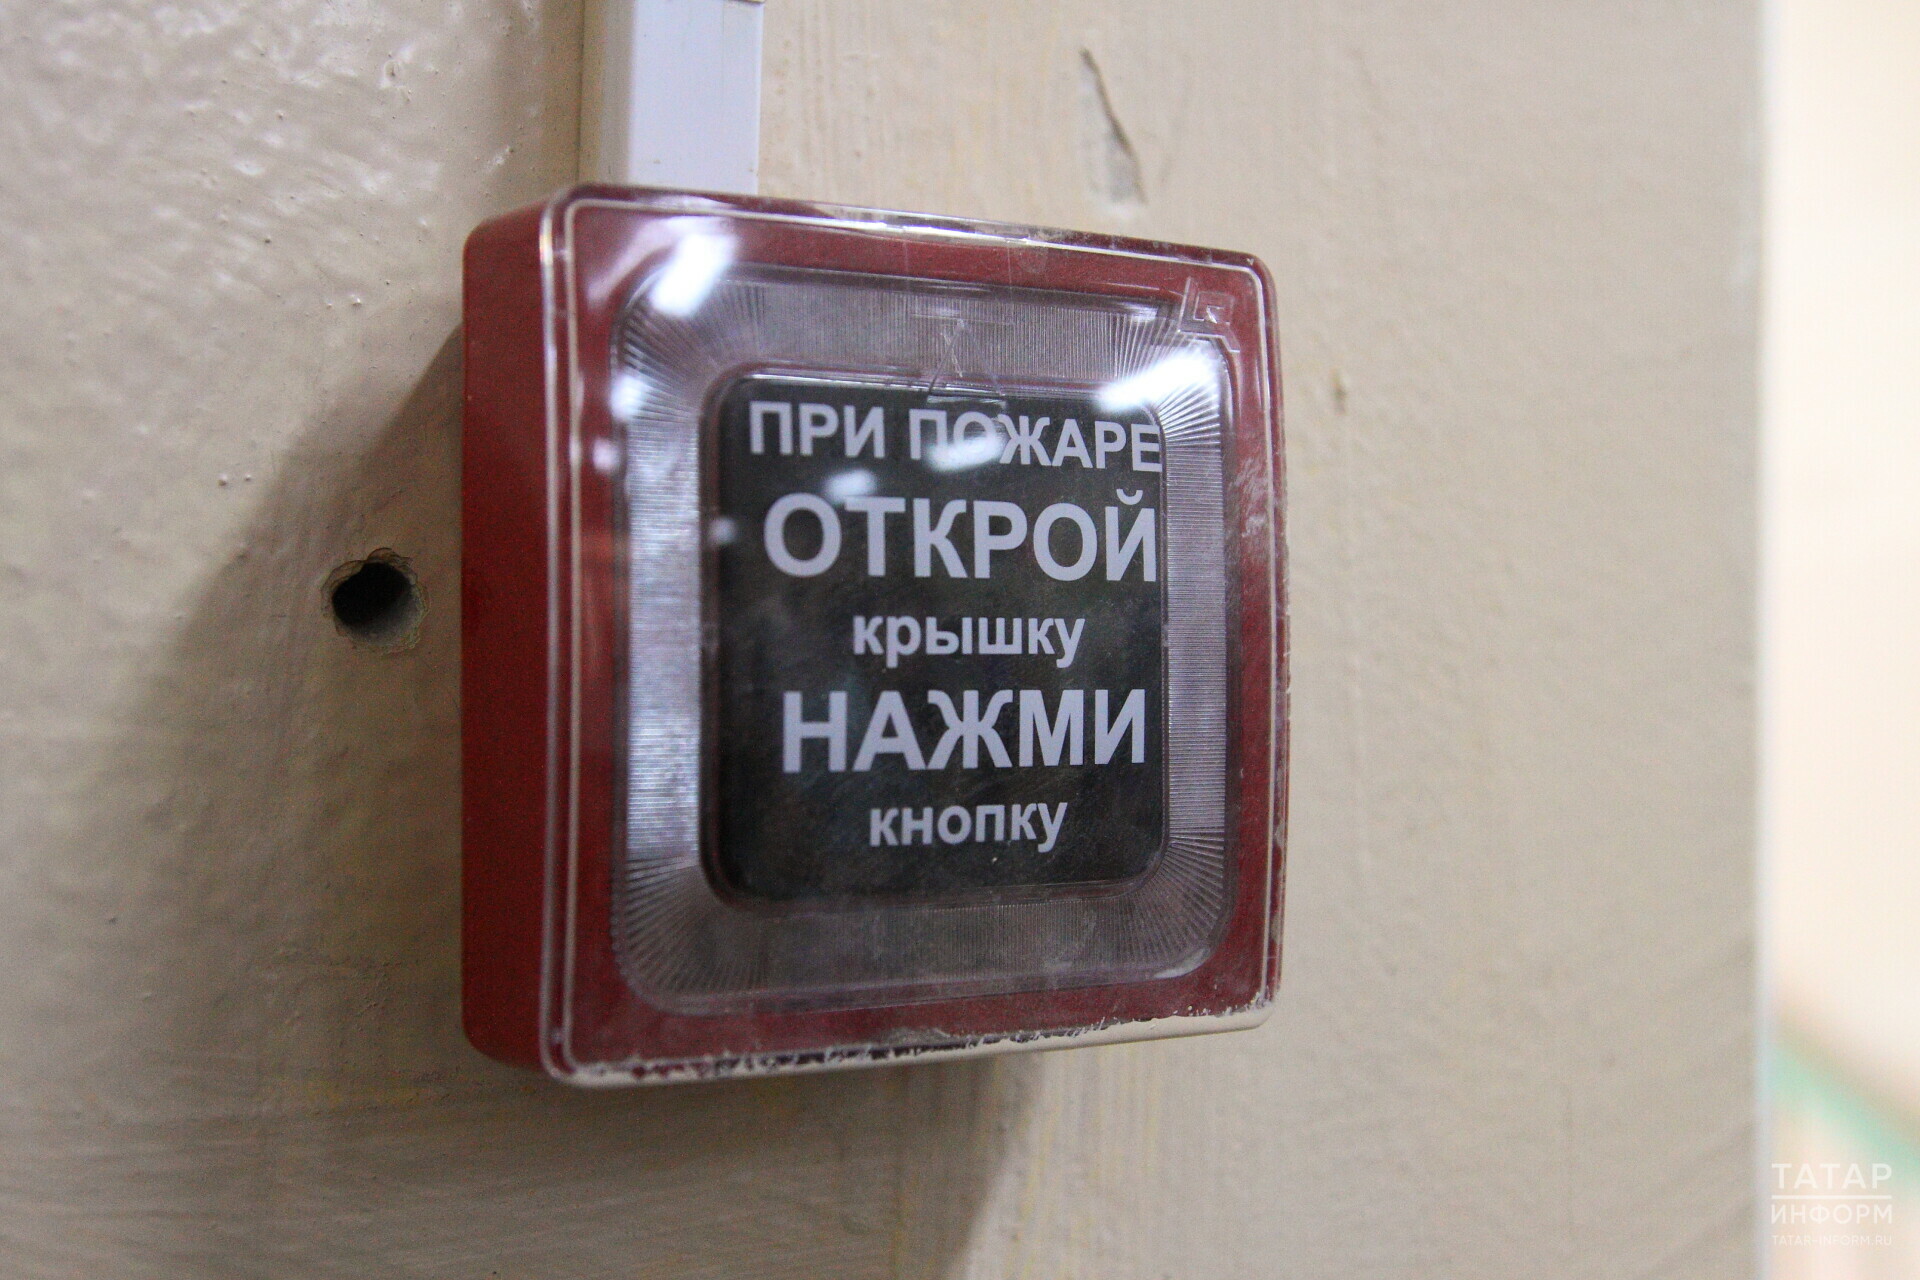 В учреждениях образования Казани установят пожарную сигнализацию за 10,4 млн рублей